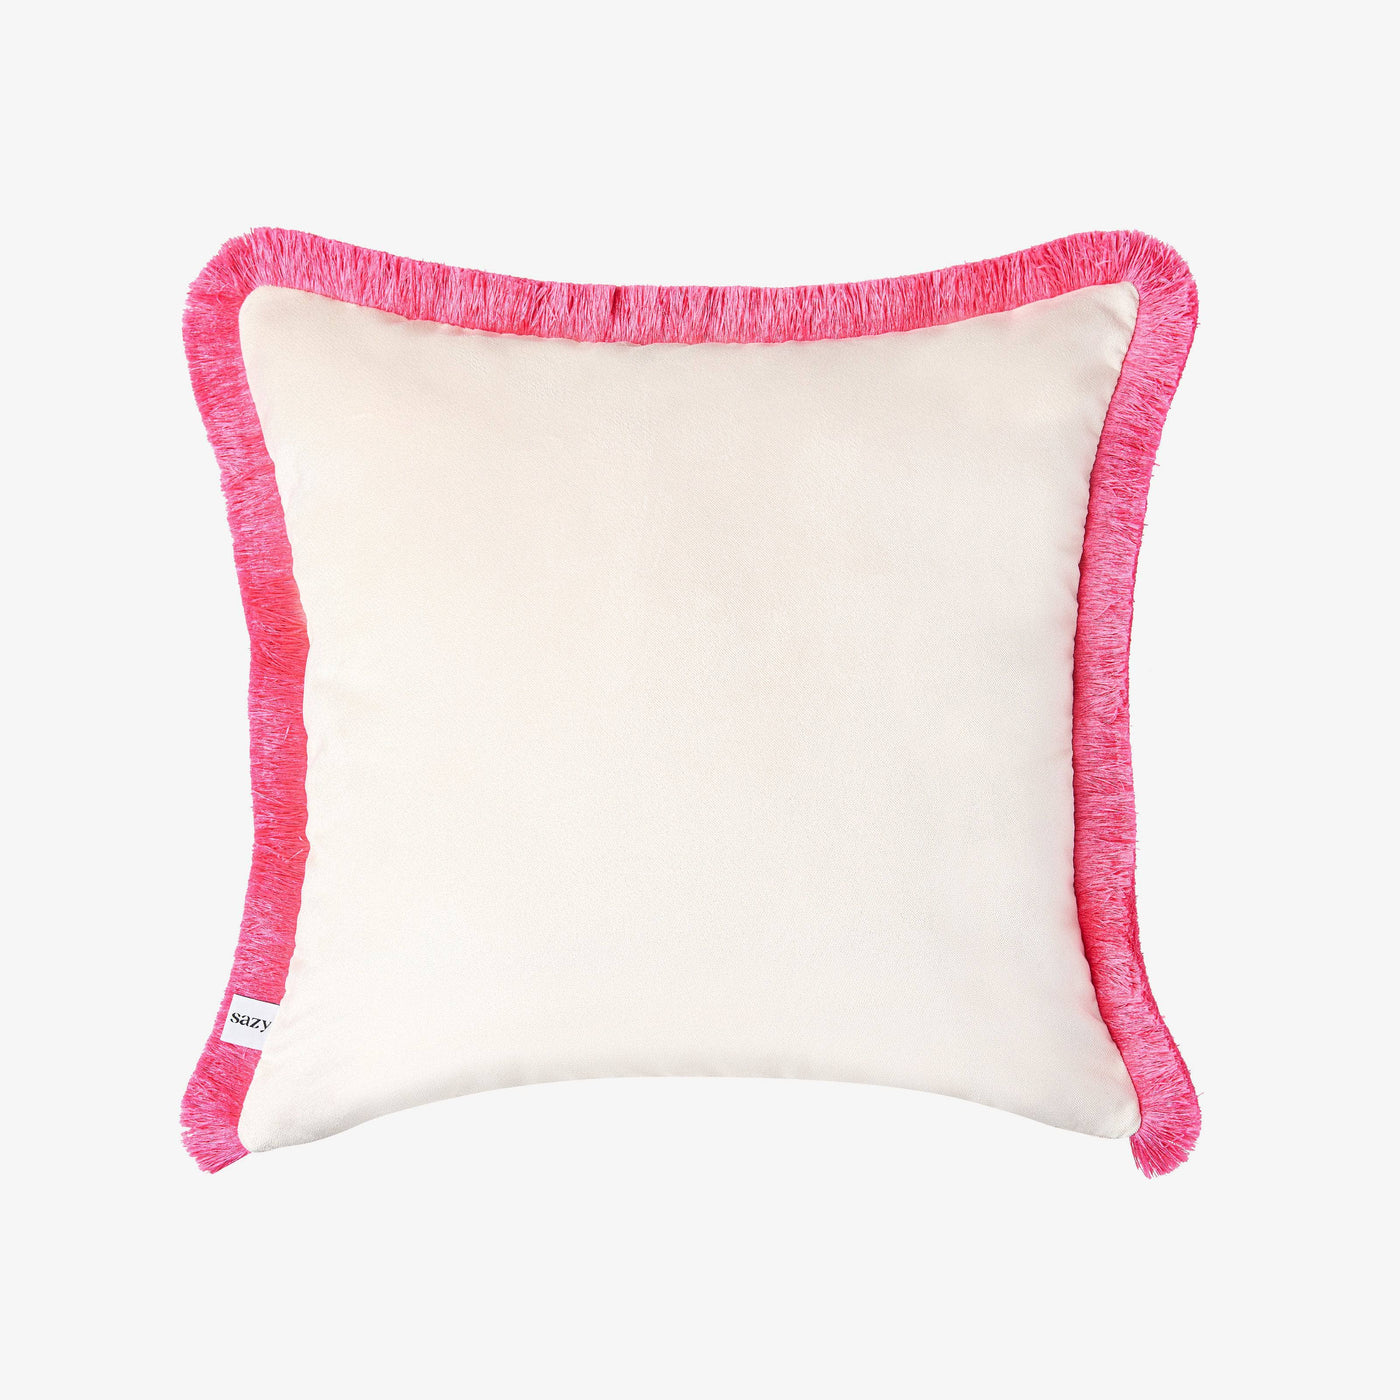 Herais Cushion Cover, Pink, 50x50cm 2